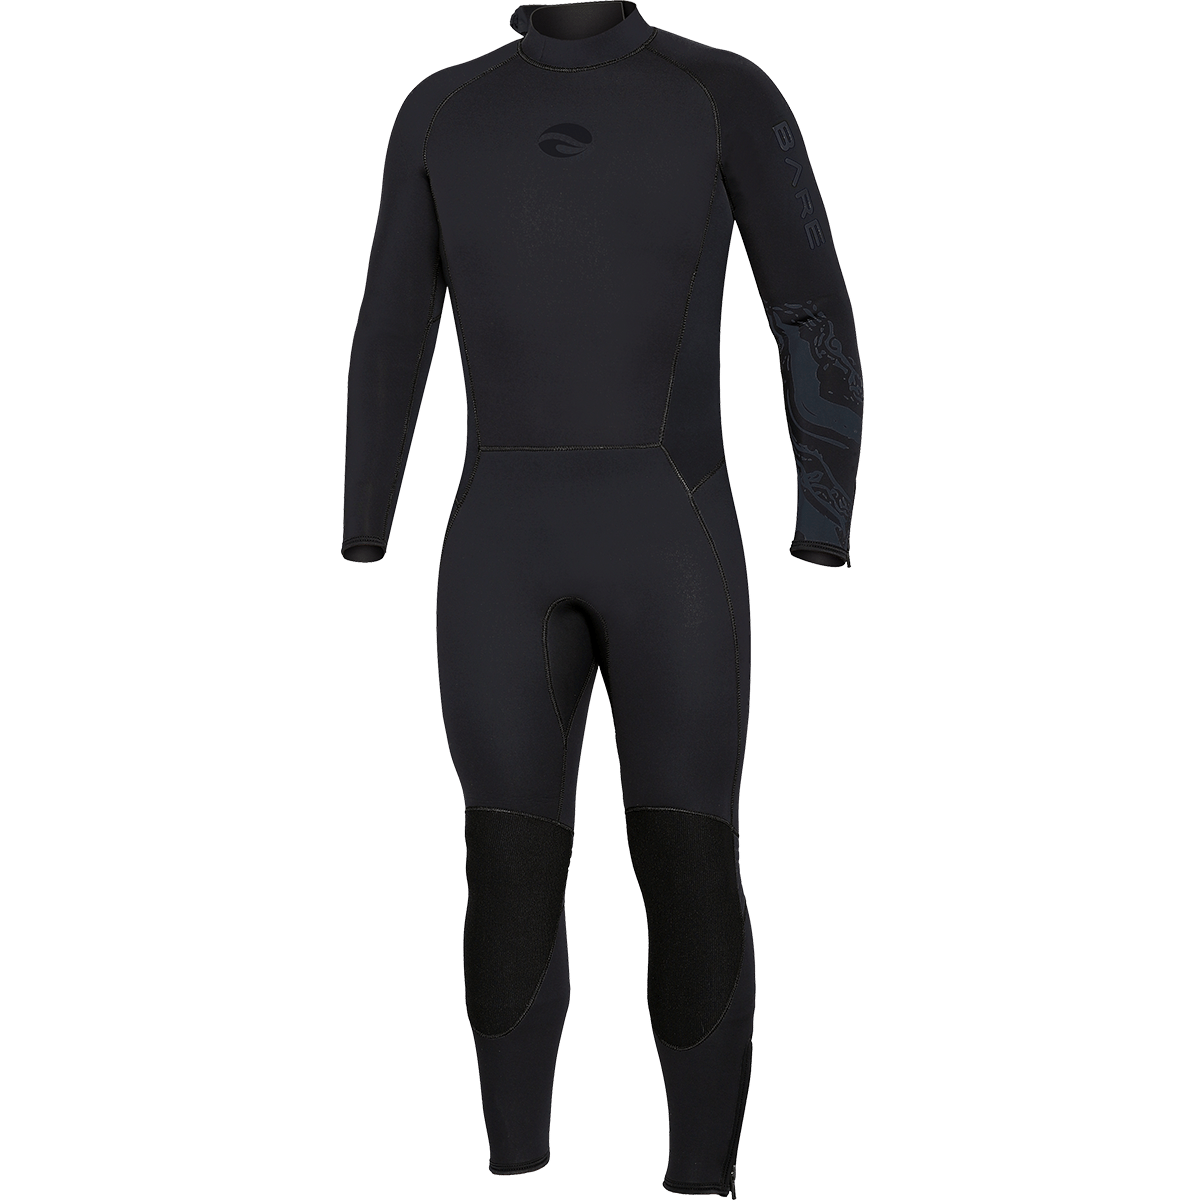 Velocity Ultra Full 7 mm Wetsuit Men